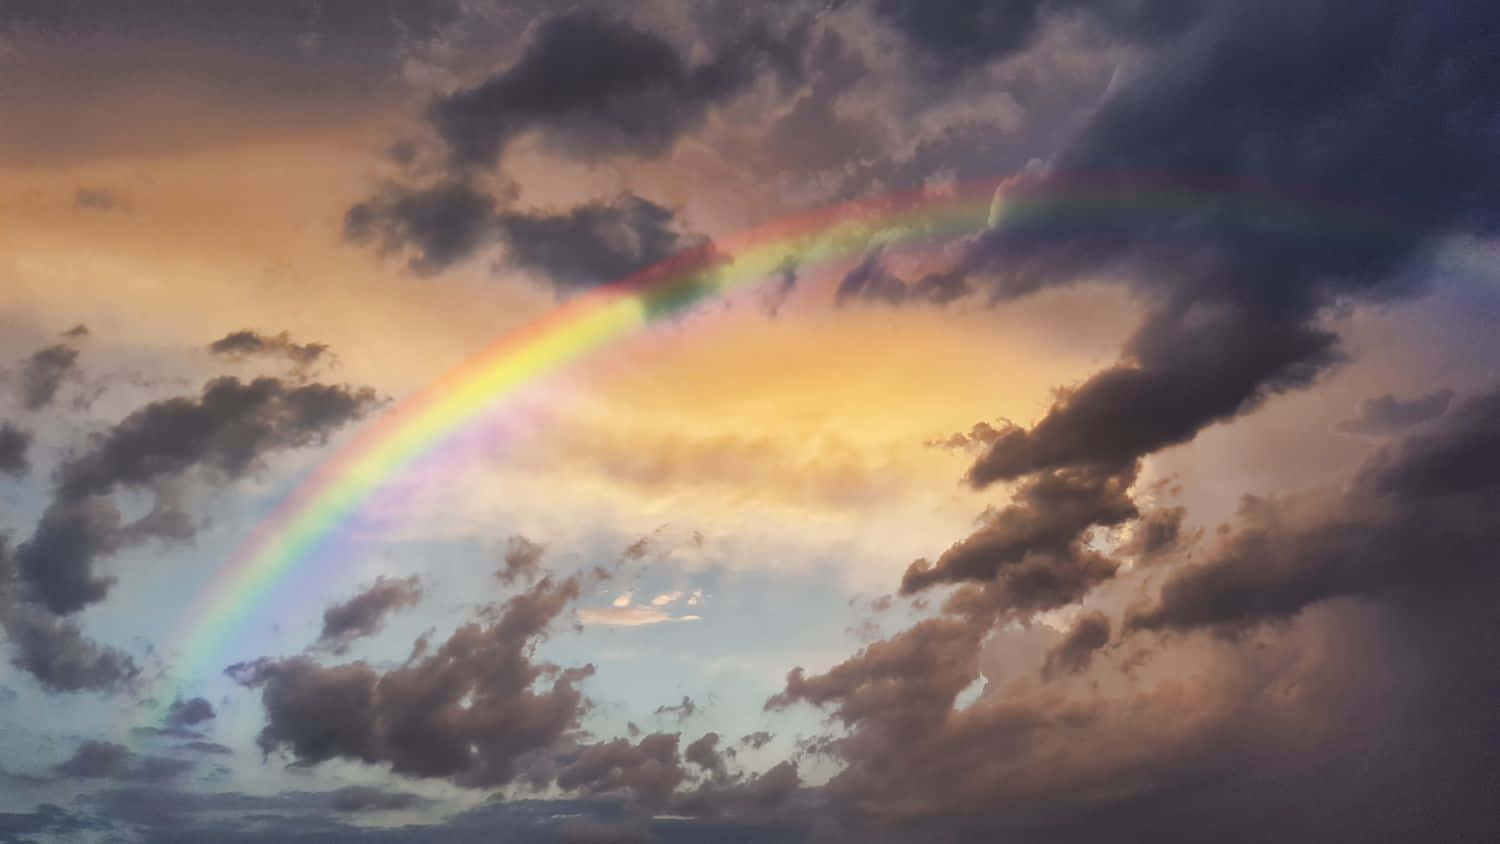 A Colorful Rainbow Arc Illuminating the Sky